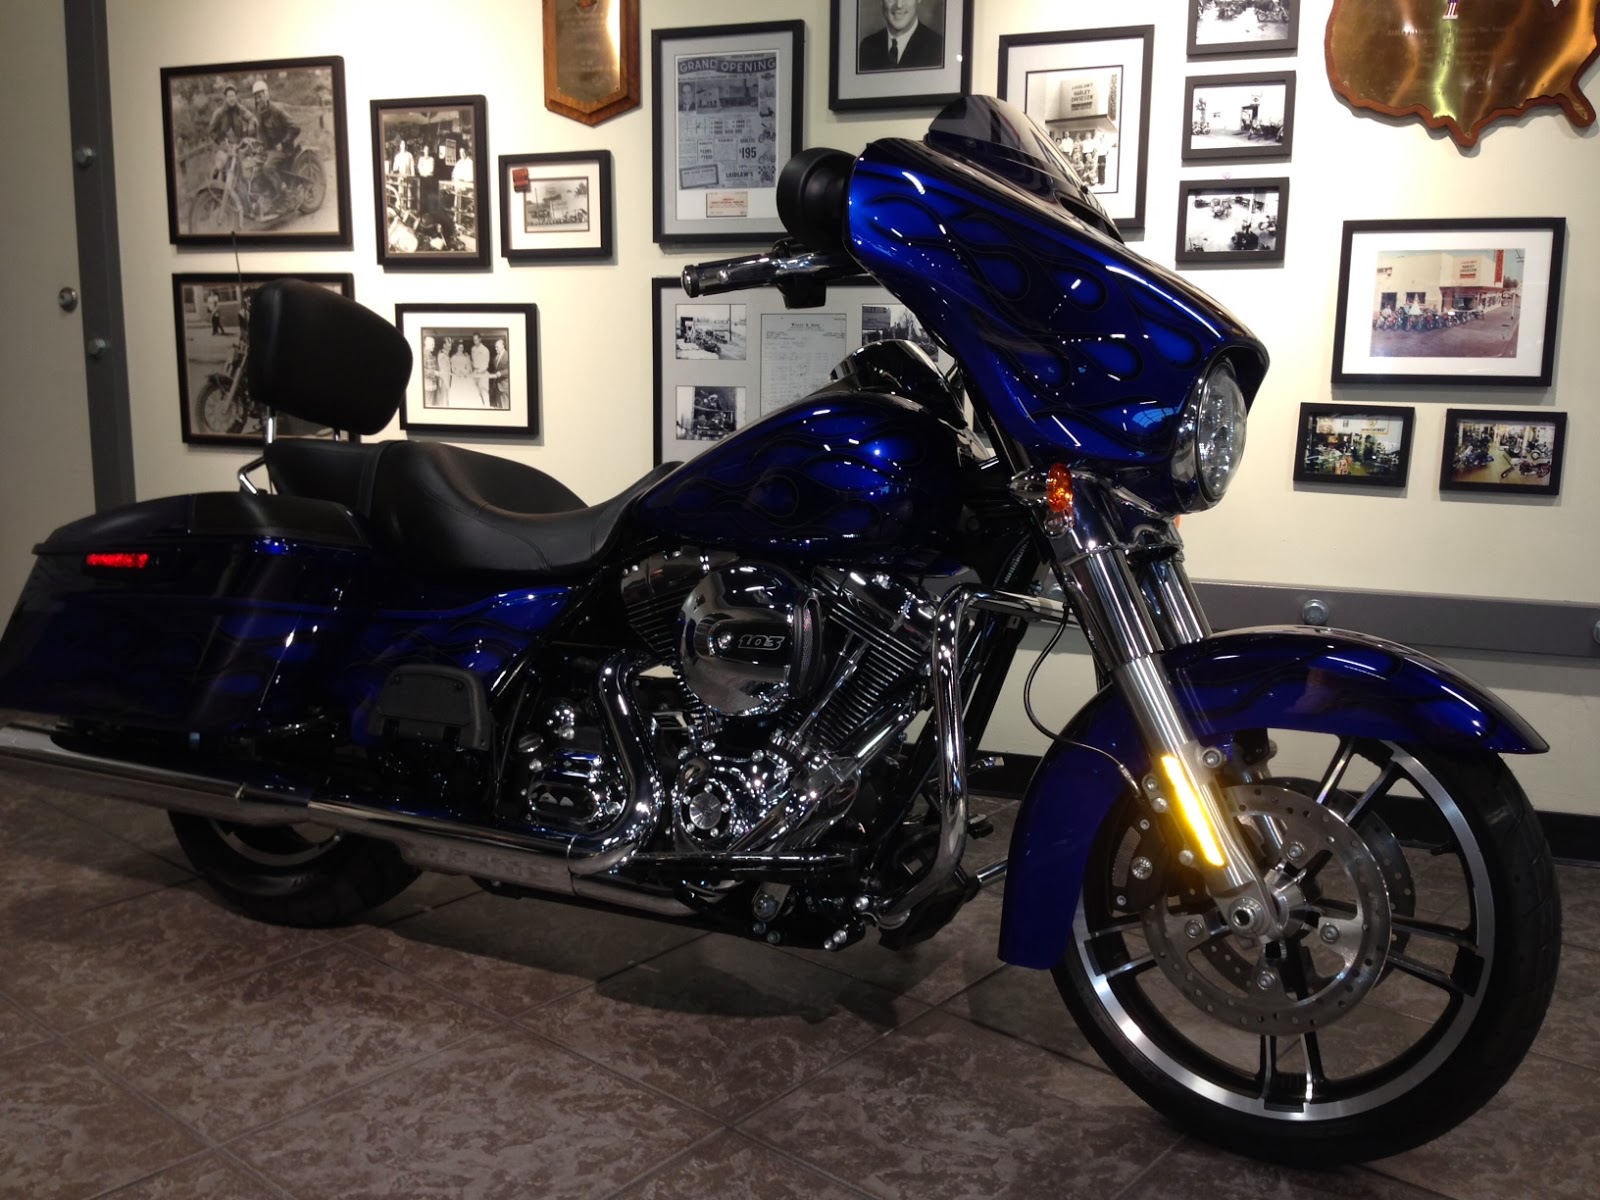 Laidlaw's Harley-Davidson Blog